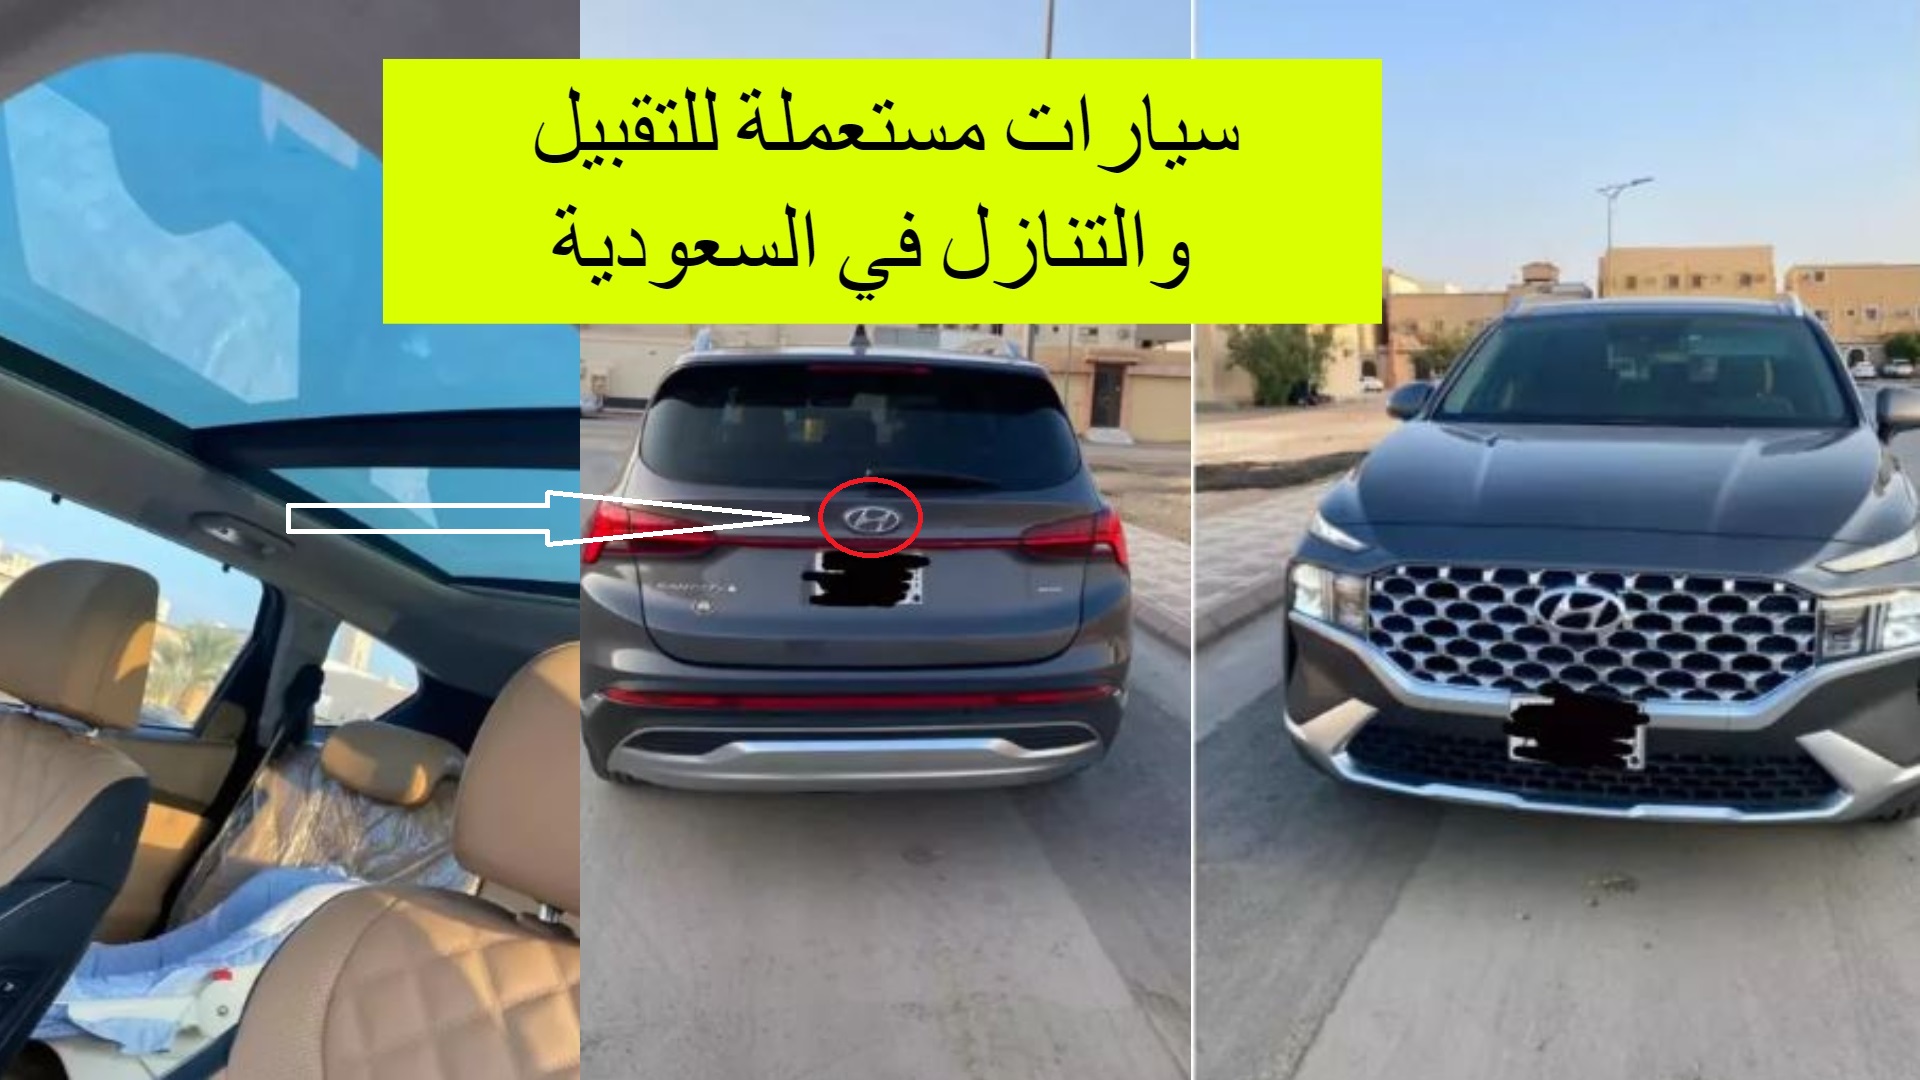 للبيع .. سيارات مستعملة في السعودية بحالة ممتازة أبرزها ميني كوبر وتوضيح كامل لمواصفات السيارات